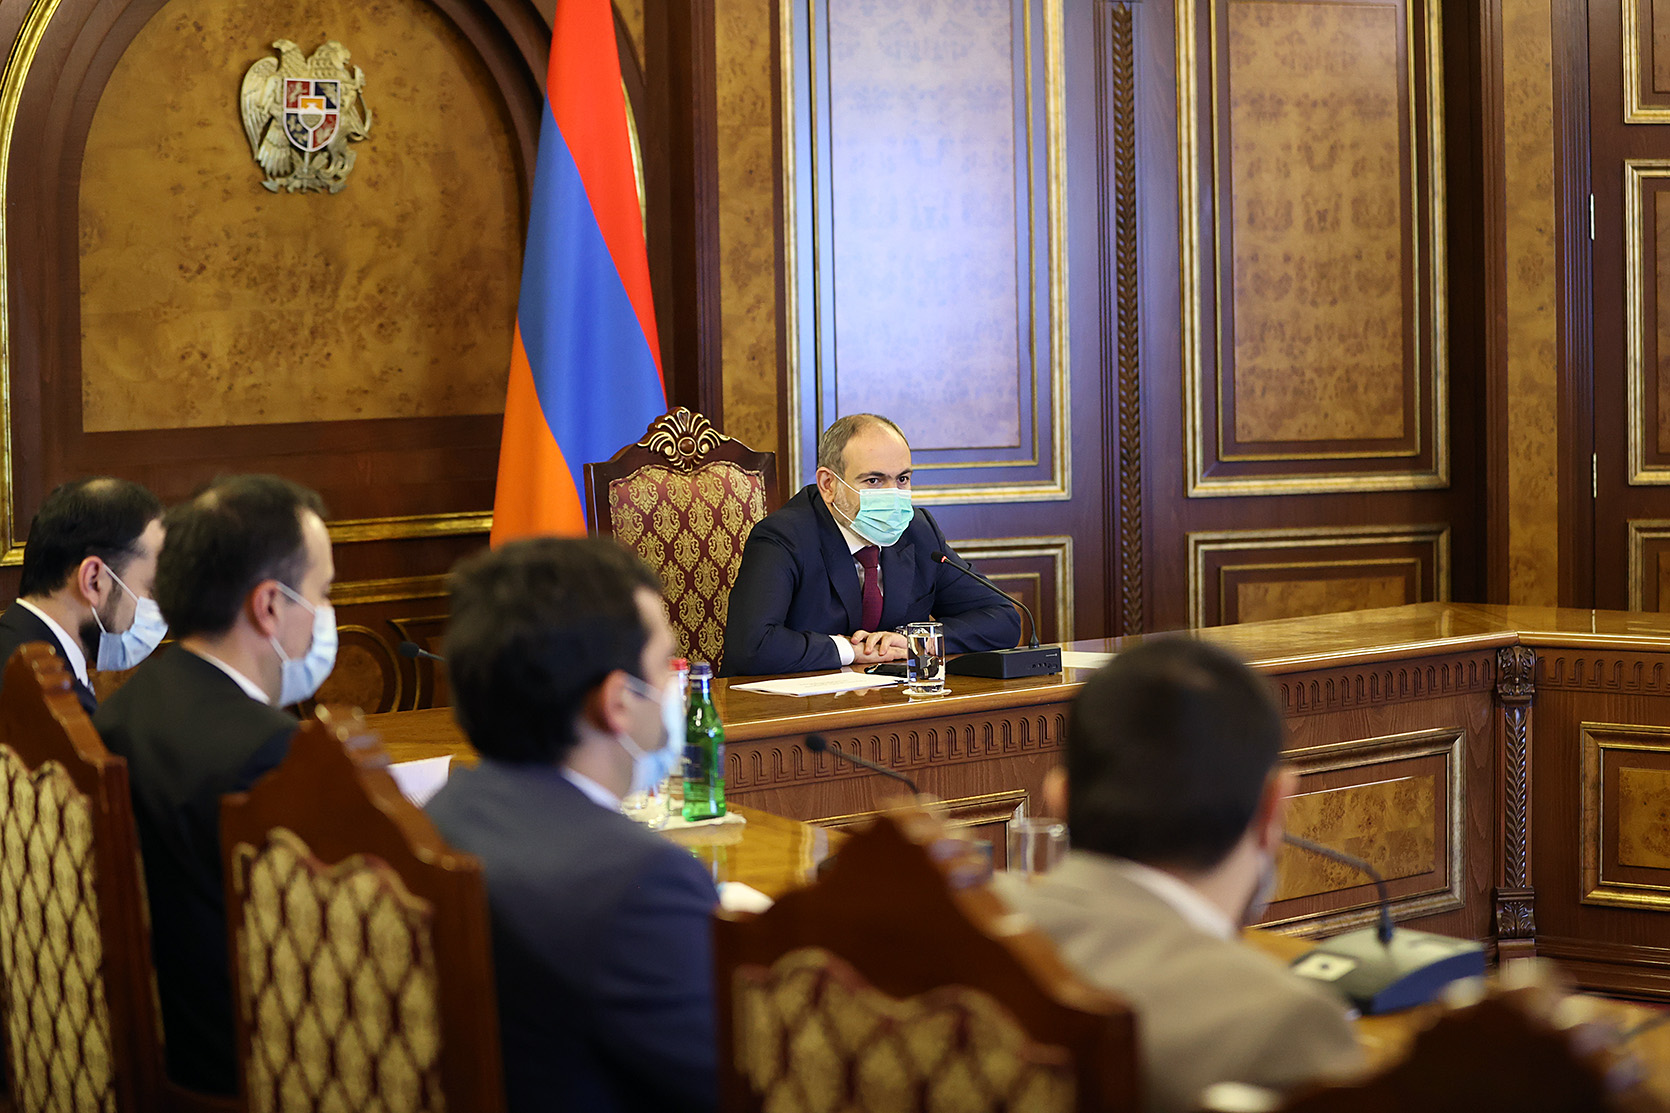 Пашинян: Армения будет работать над реформами в армии в тесном сотрудничестве с Россией 